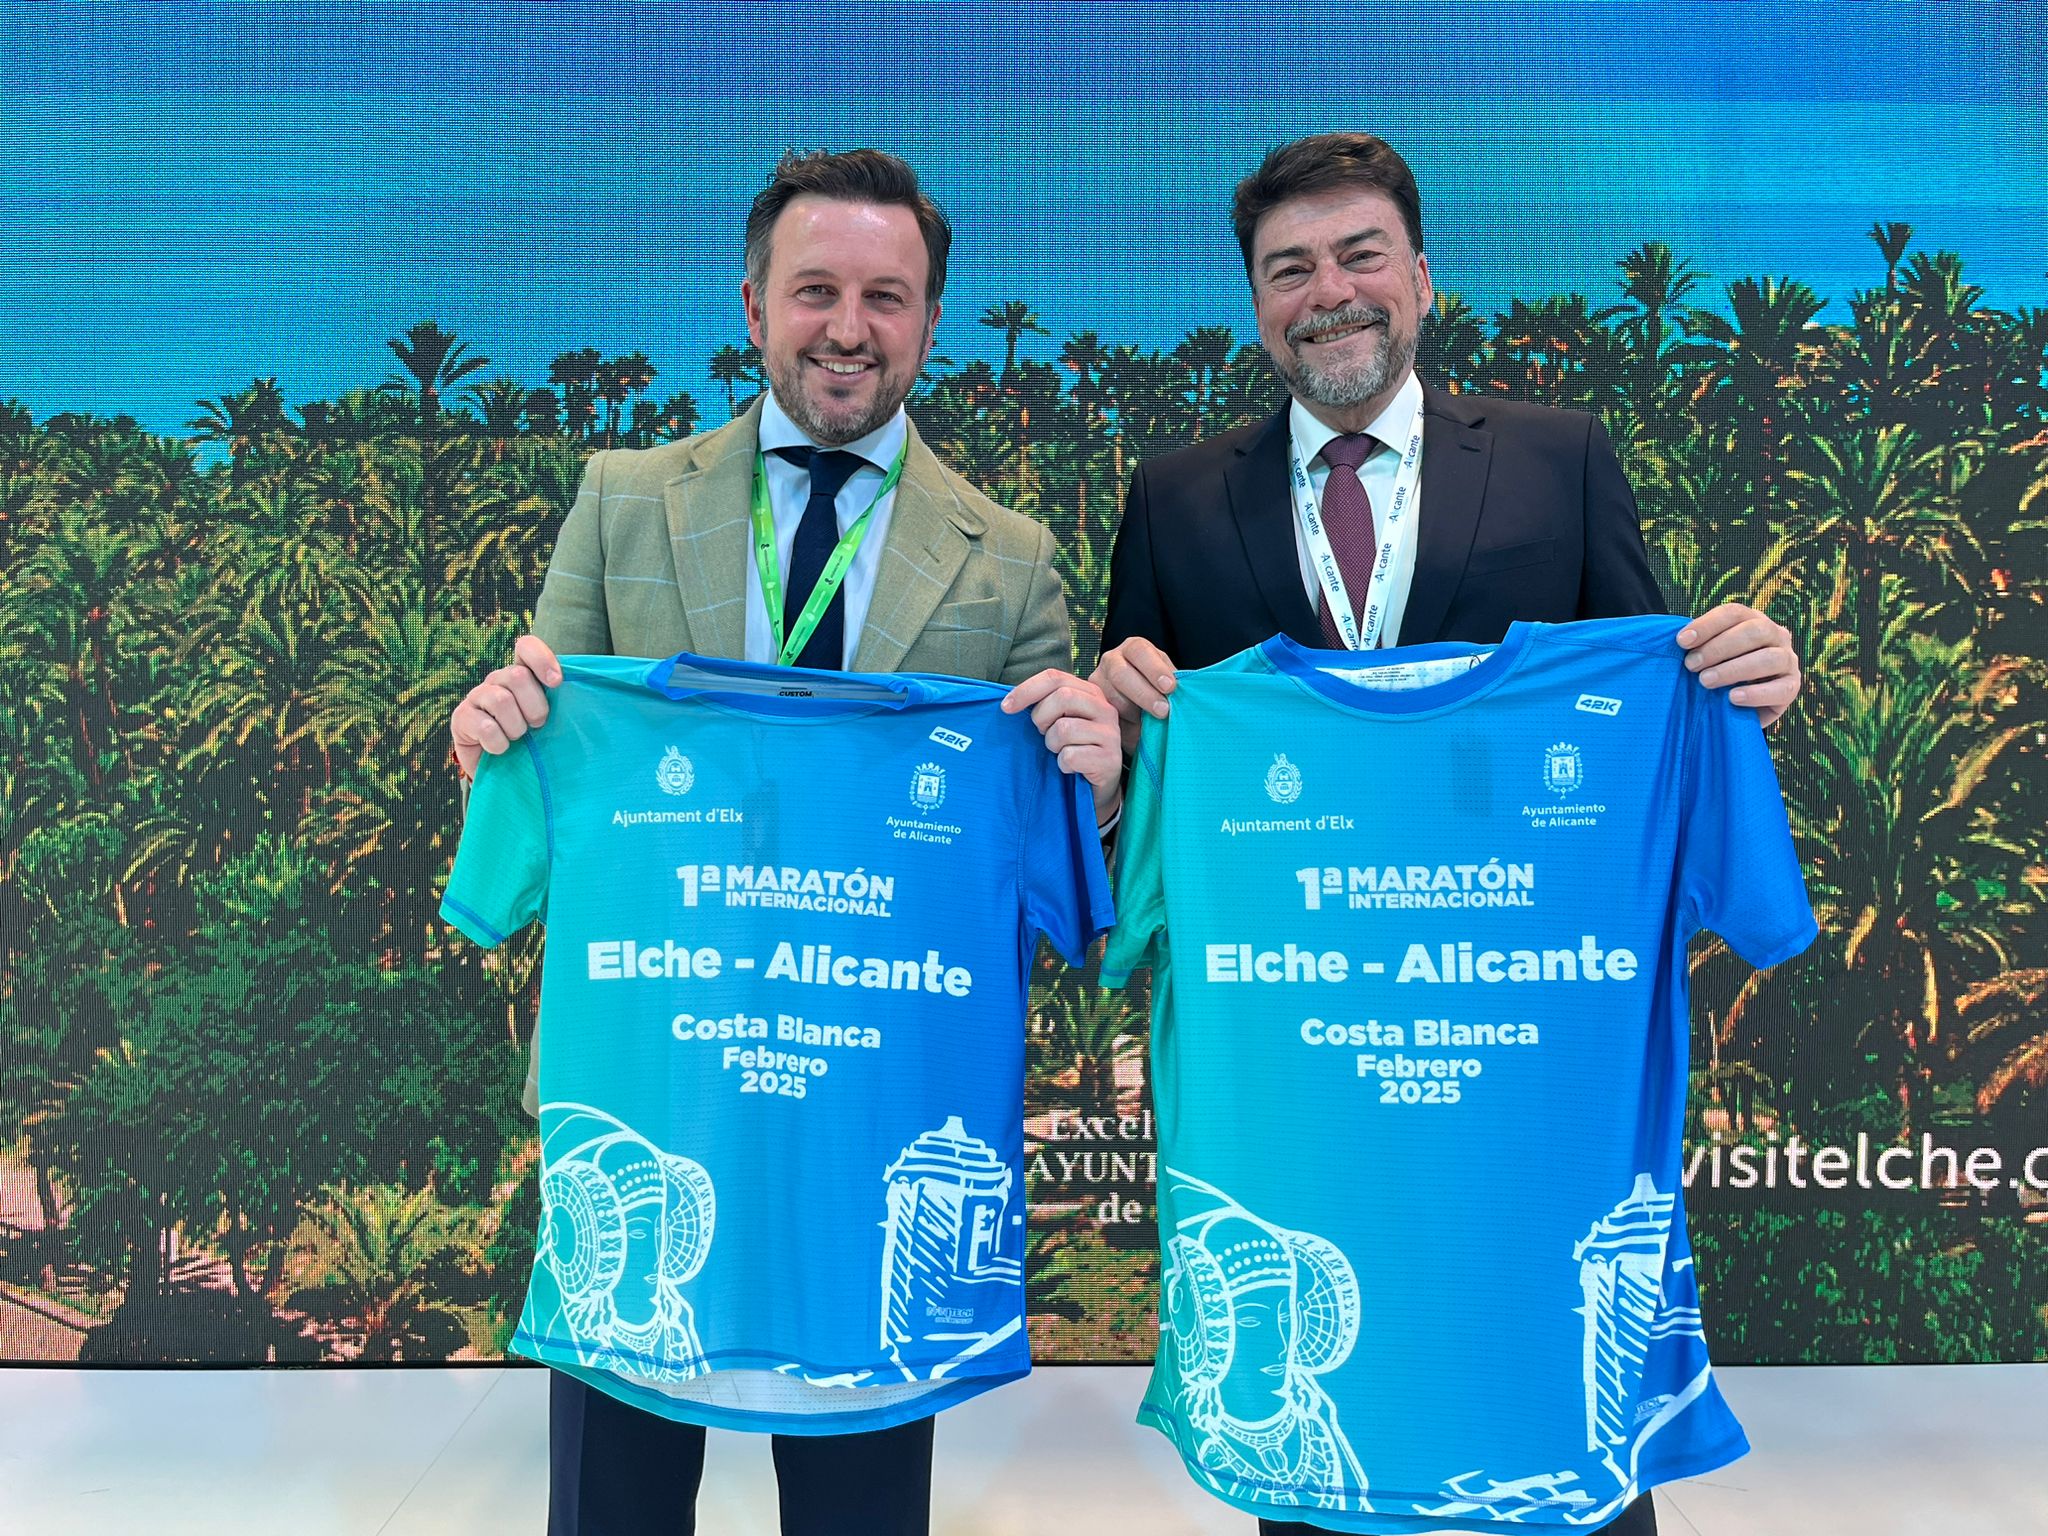 Alicante y Elche organizan el primer maratón entre ambas ciudades y acogerán un gran congreso de turismo corporativo